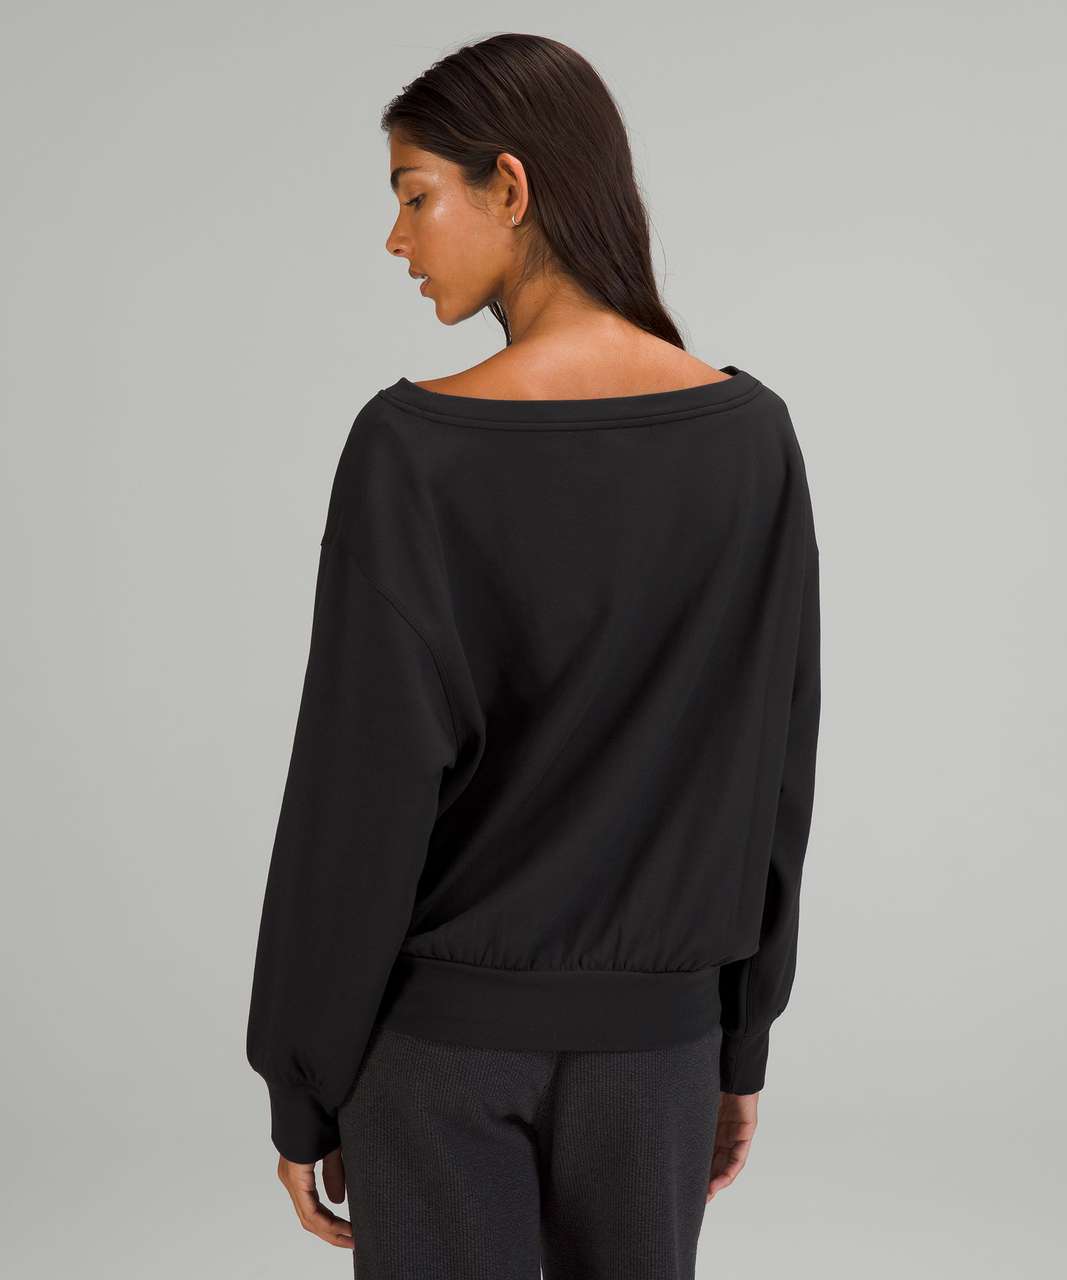 Lululemon Pleated Modal Fleece Pullover - Black